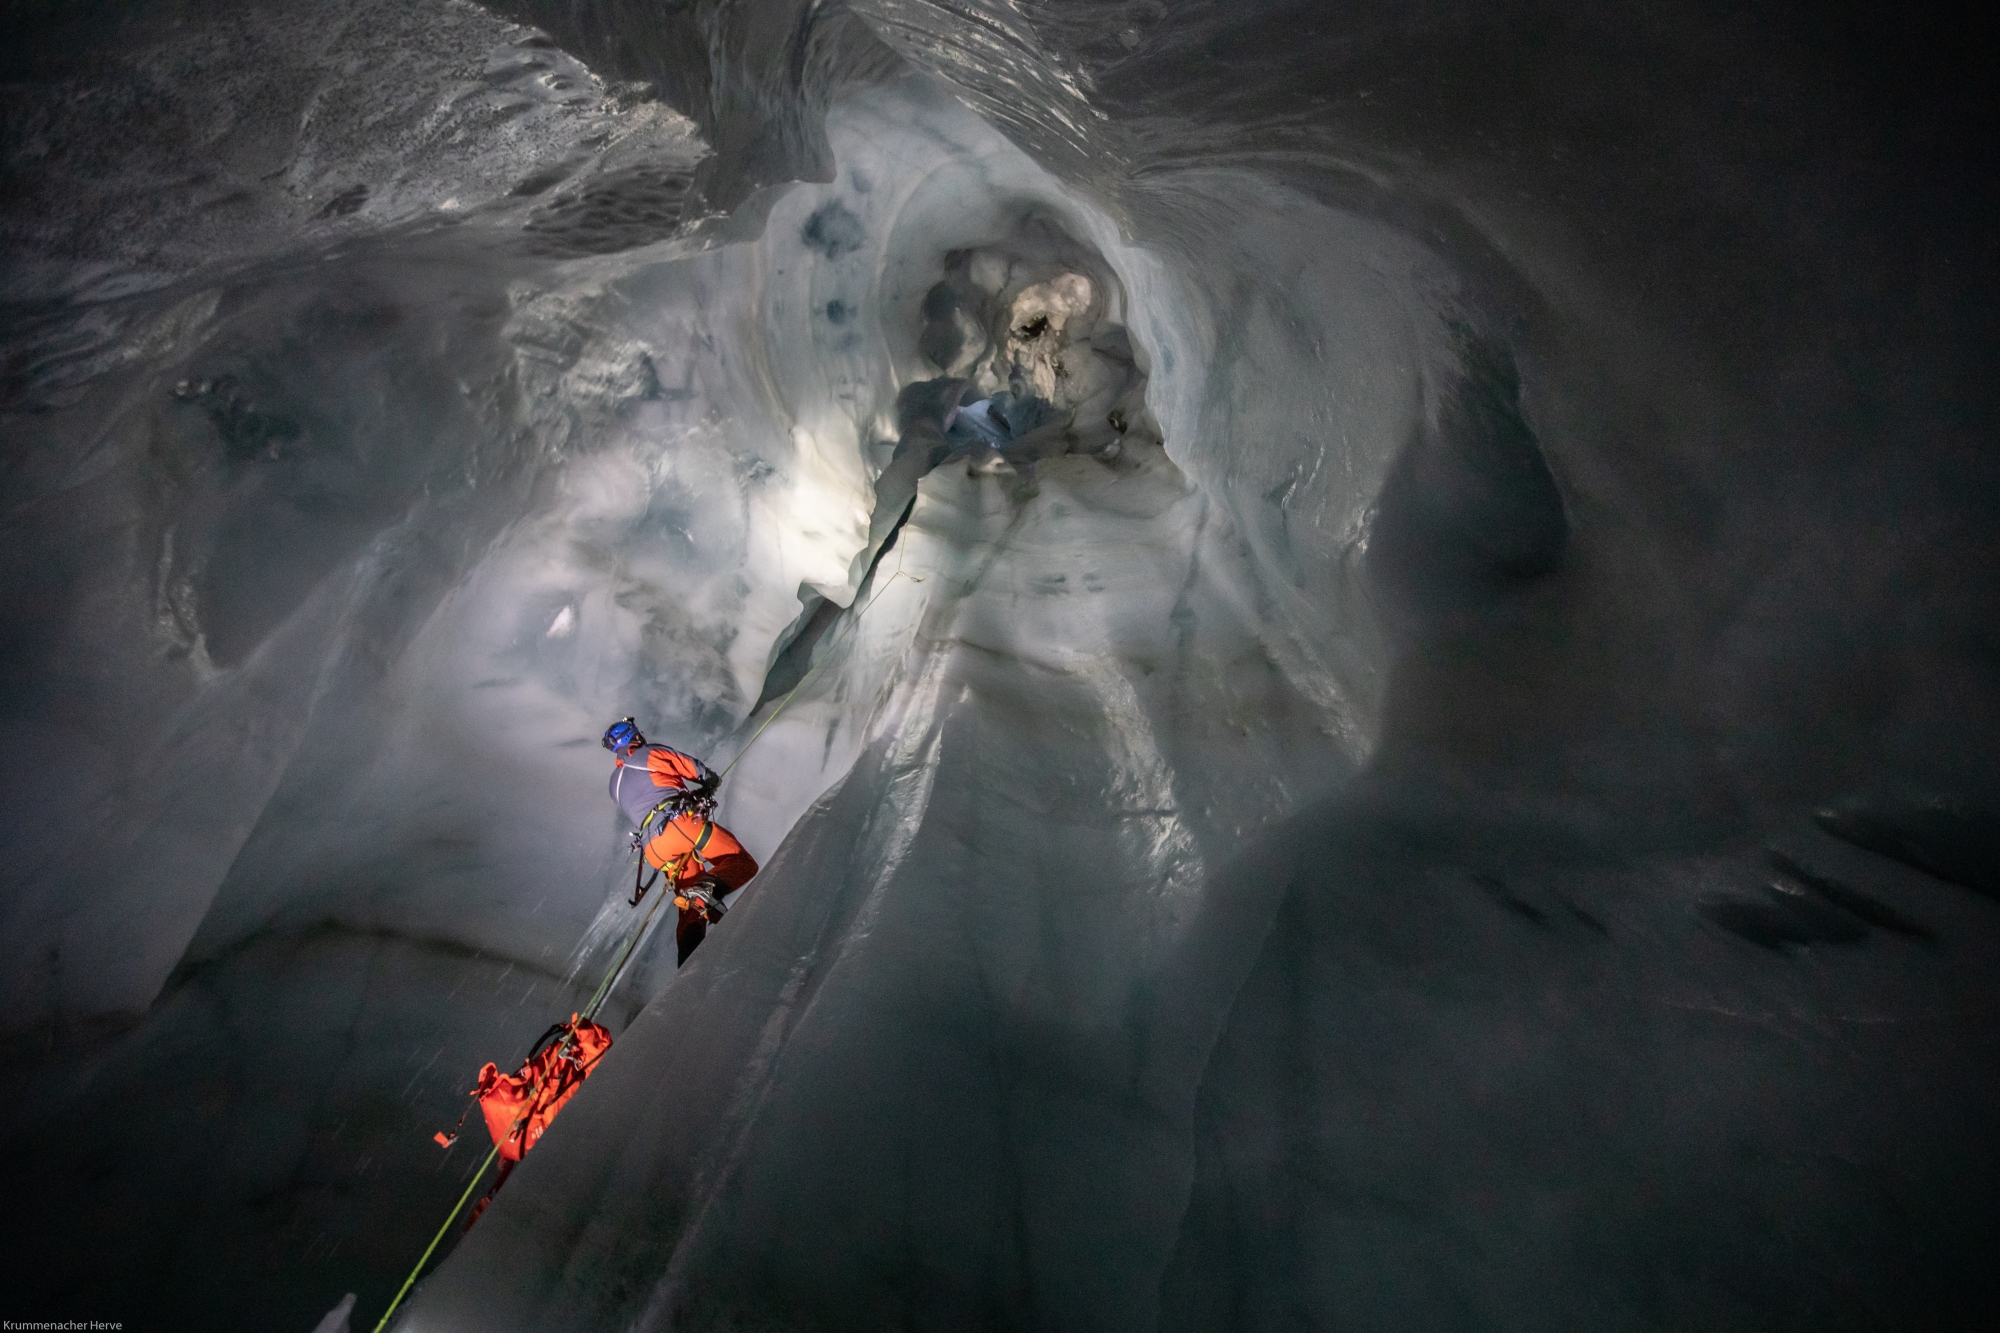 Le week-end précédent notre expédition, les spéléologues ont exploré le puits de 40 mètres de profondeur. Une manœuvre qui mêle des techniques d'alpinisme, de spéléologie et de canyoning.